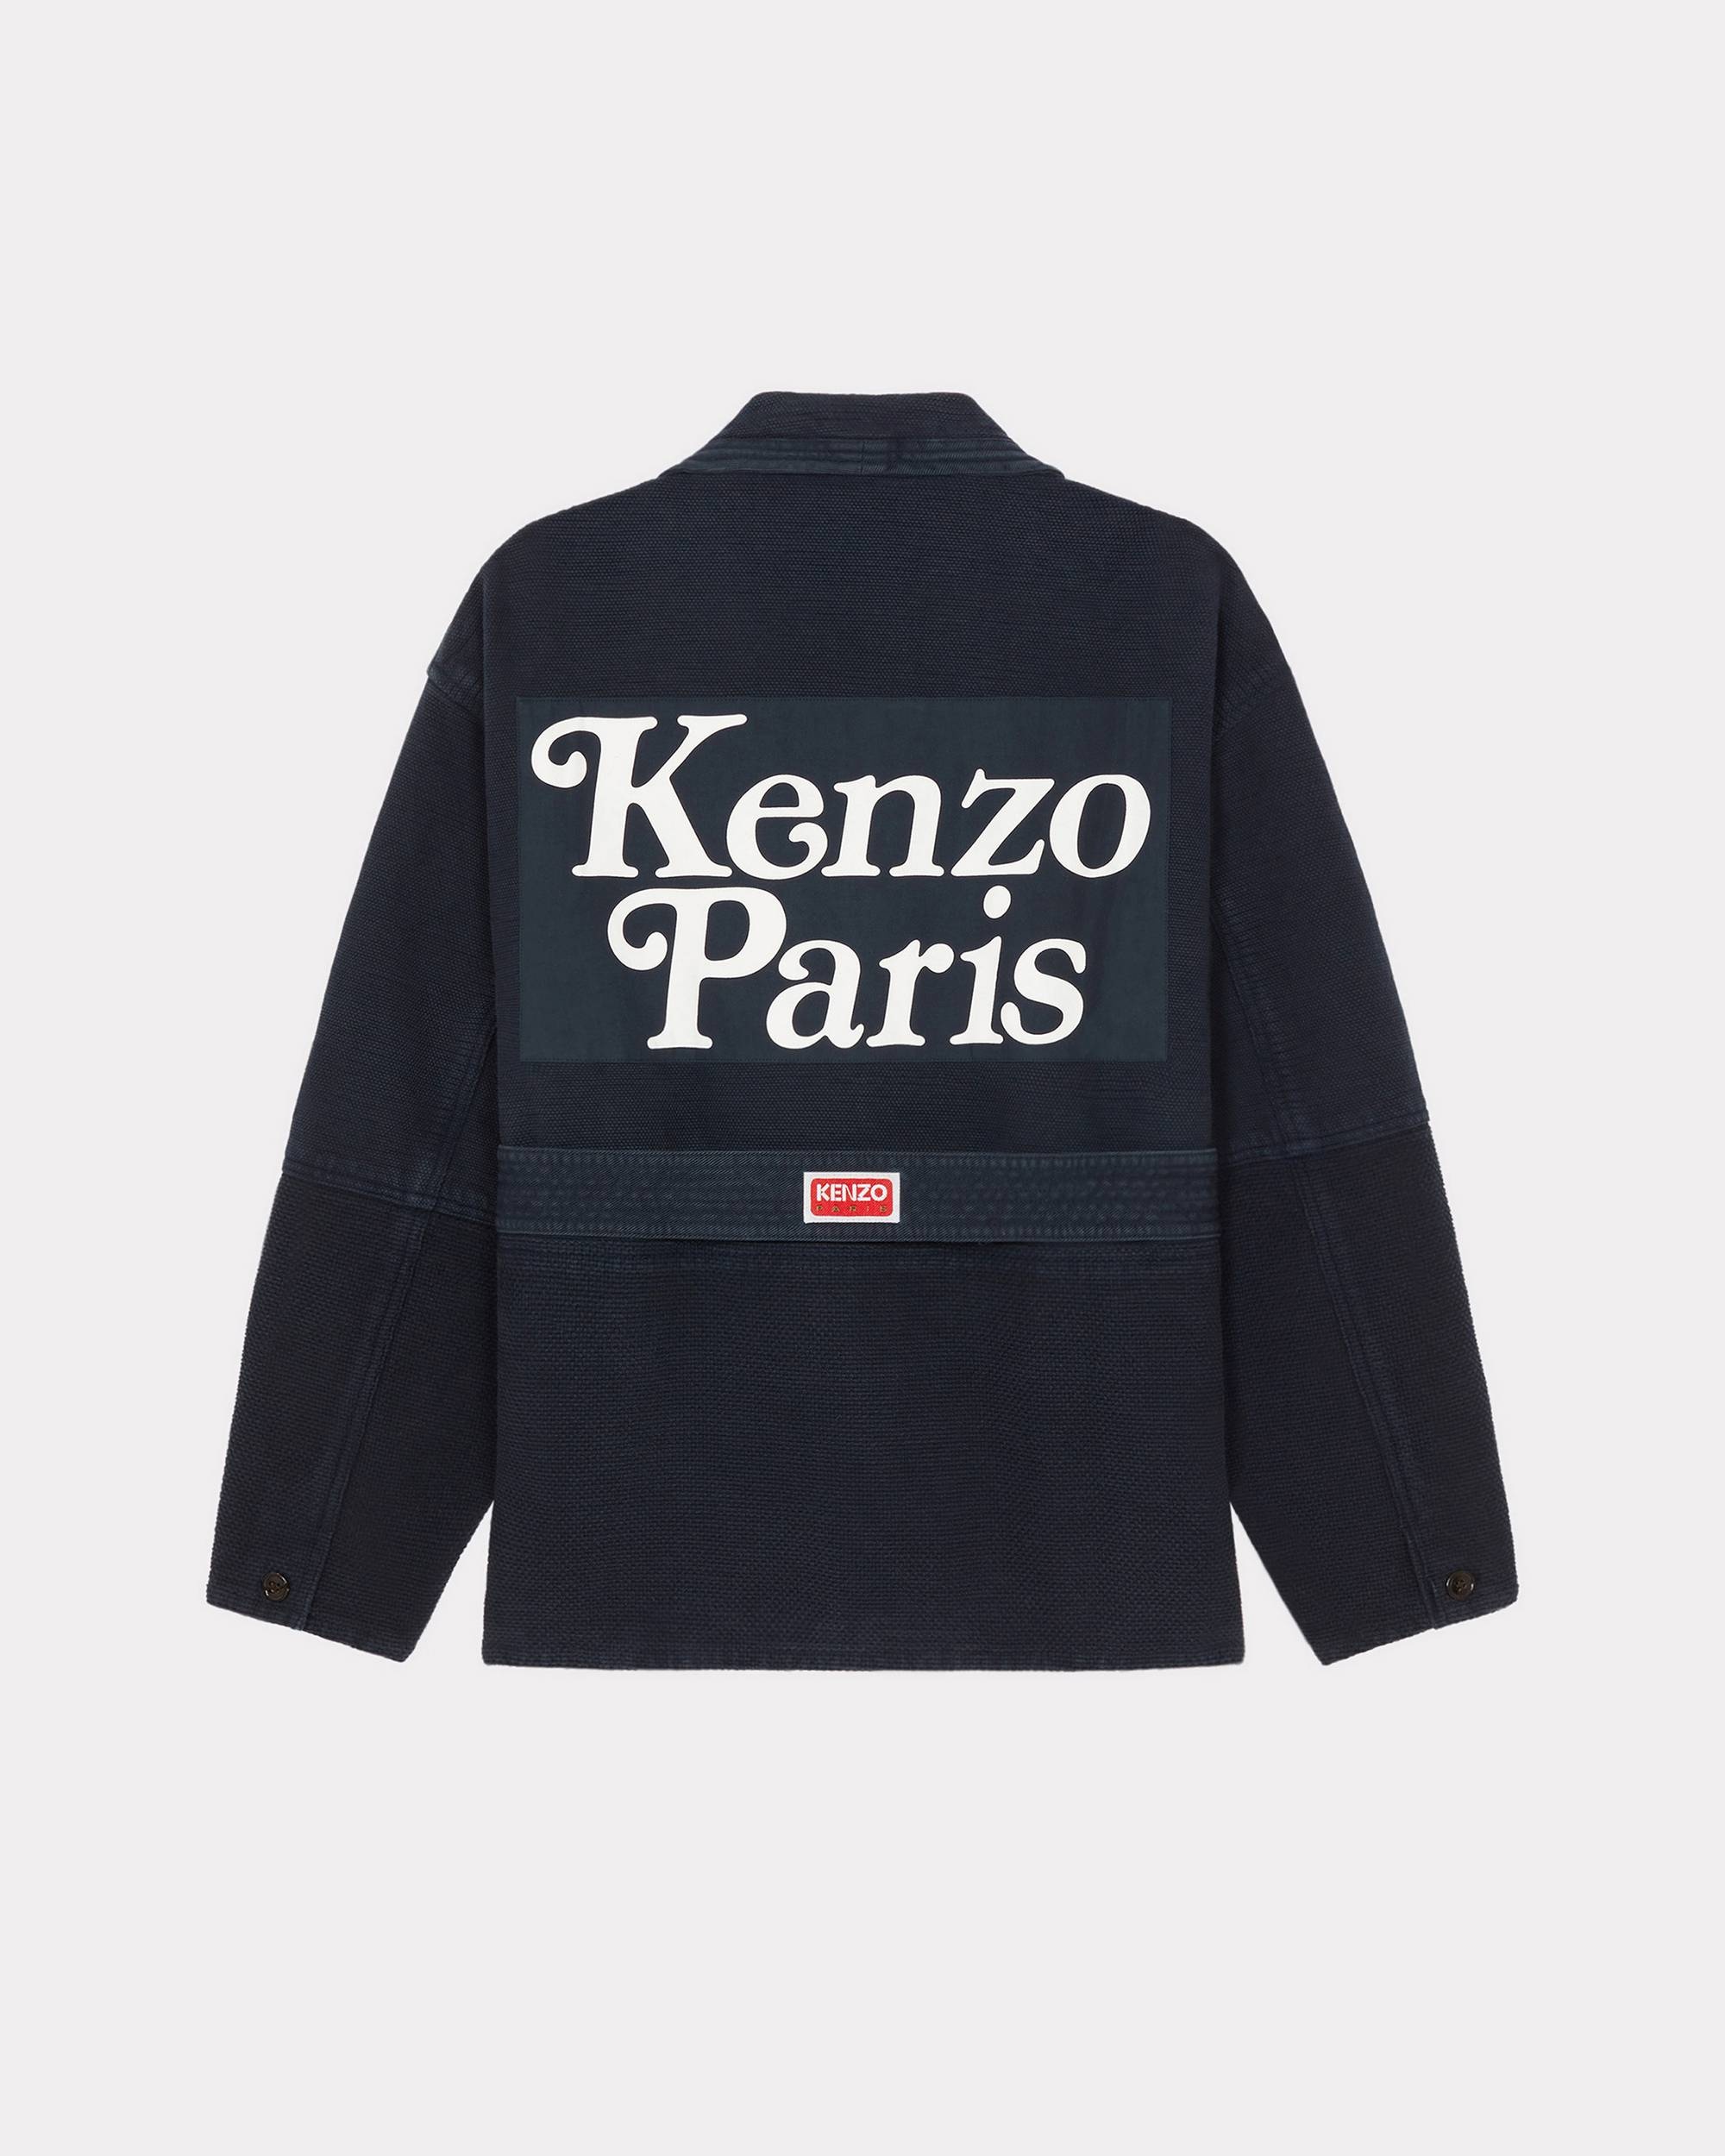 'KENZO by Verdy' workwear jacket